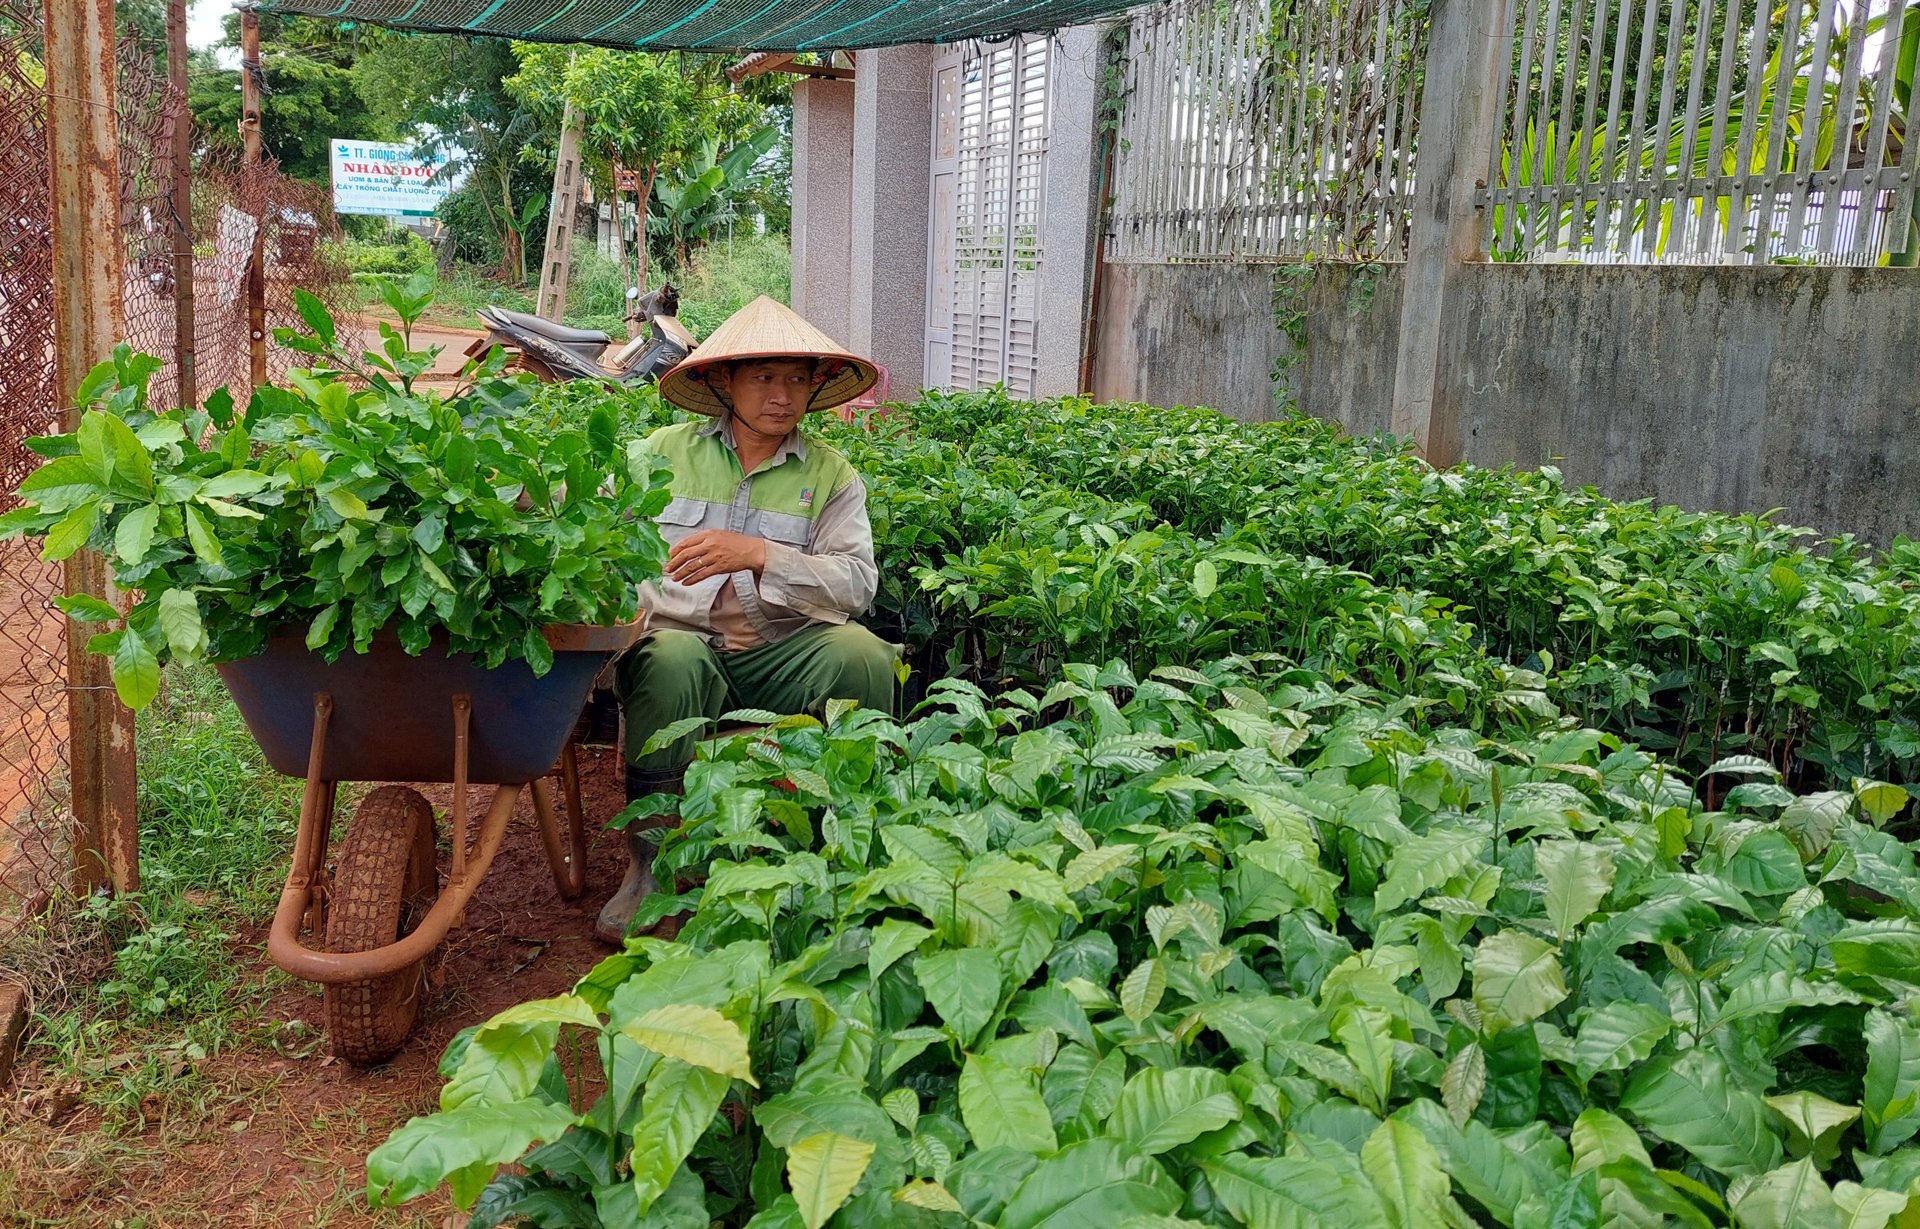 Cơ quan chức năng khuyến cao người dân lựa chọn những cơ sở kinh doanh đủ điều kiện để mua cây giống, tránh mua phải hành kém chất lượng. Ảnh: Quang Yên.